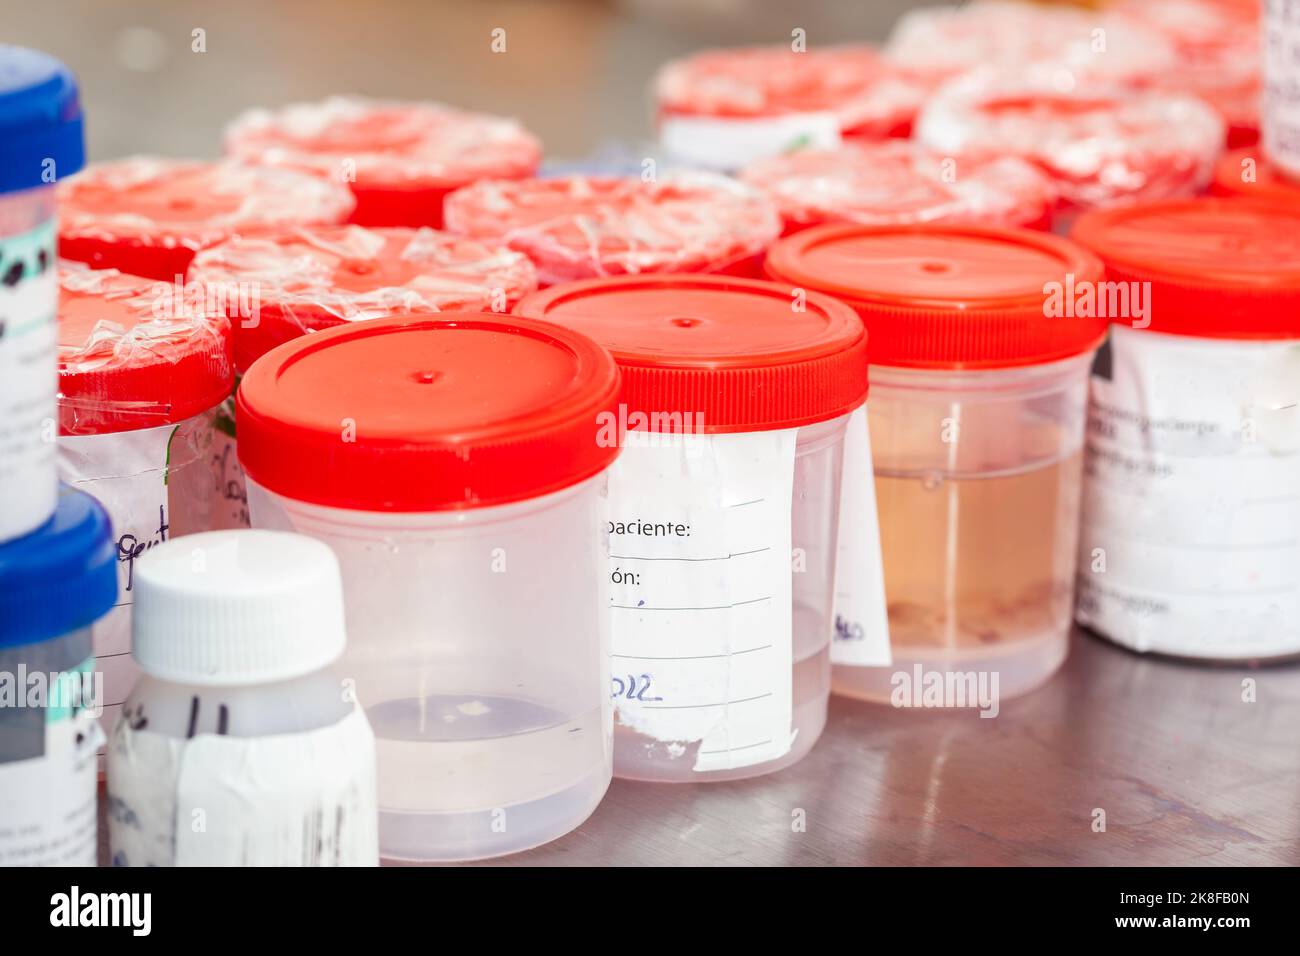 Sterile medizinische Behälter mit Biopsieproben, die zur Analyse bei der Pathologie verarbeitet werden können. Konzept zur Krebsdiagnose. Medizinisches Konzept. Stockfoto